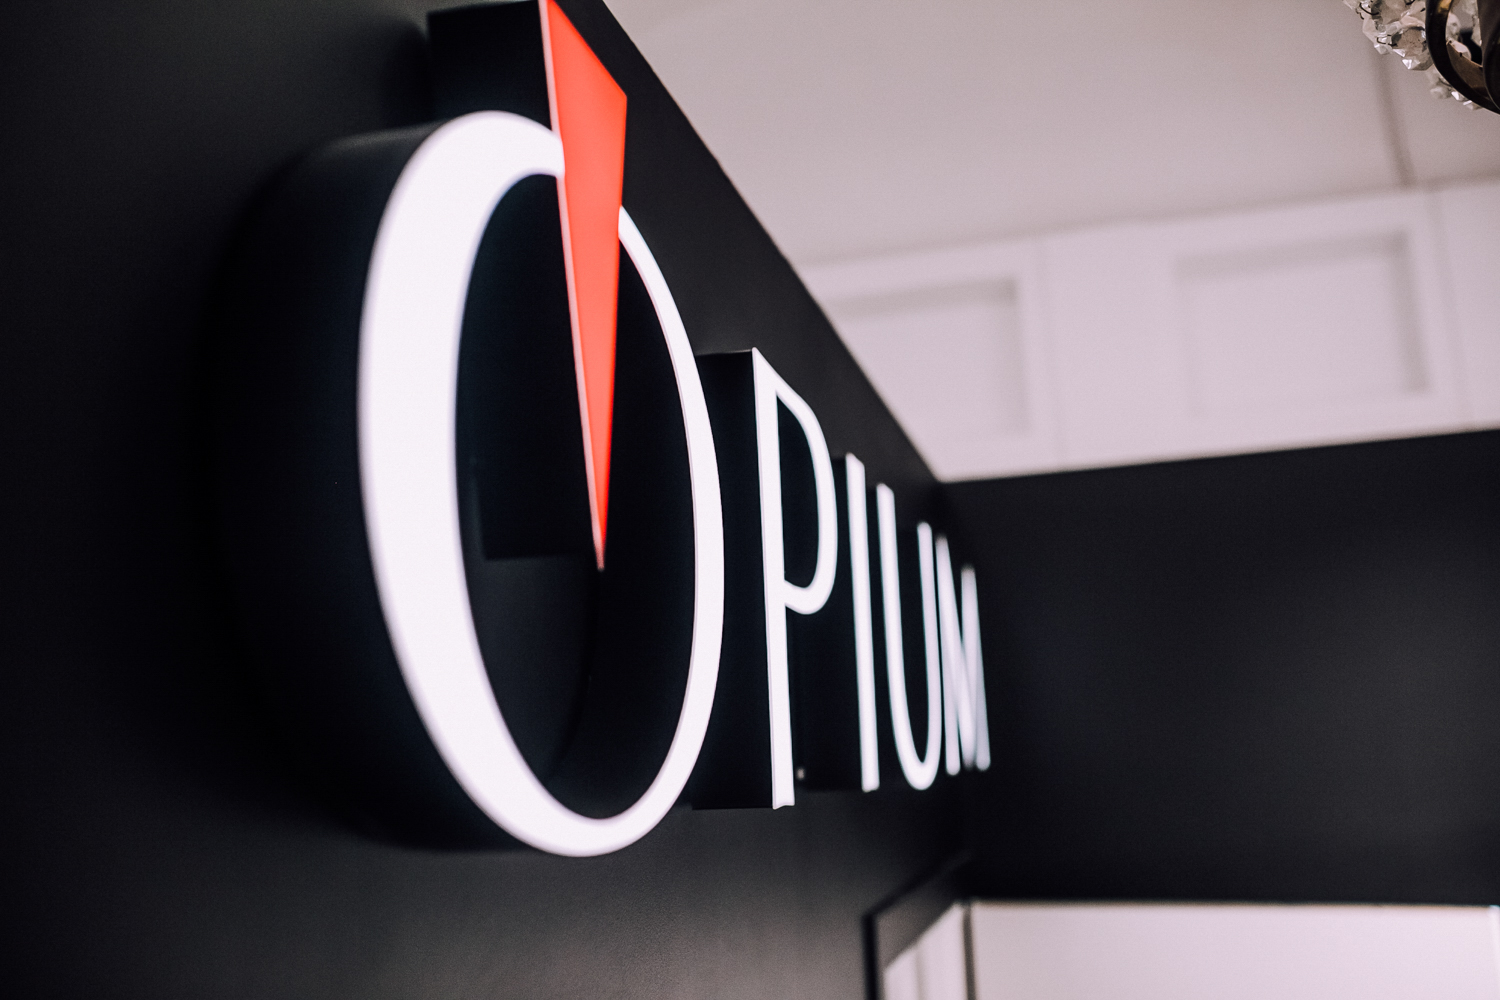 Открылся флагманский магазин Opium в Санкт-Петербурге